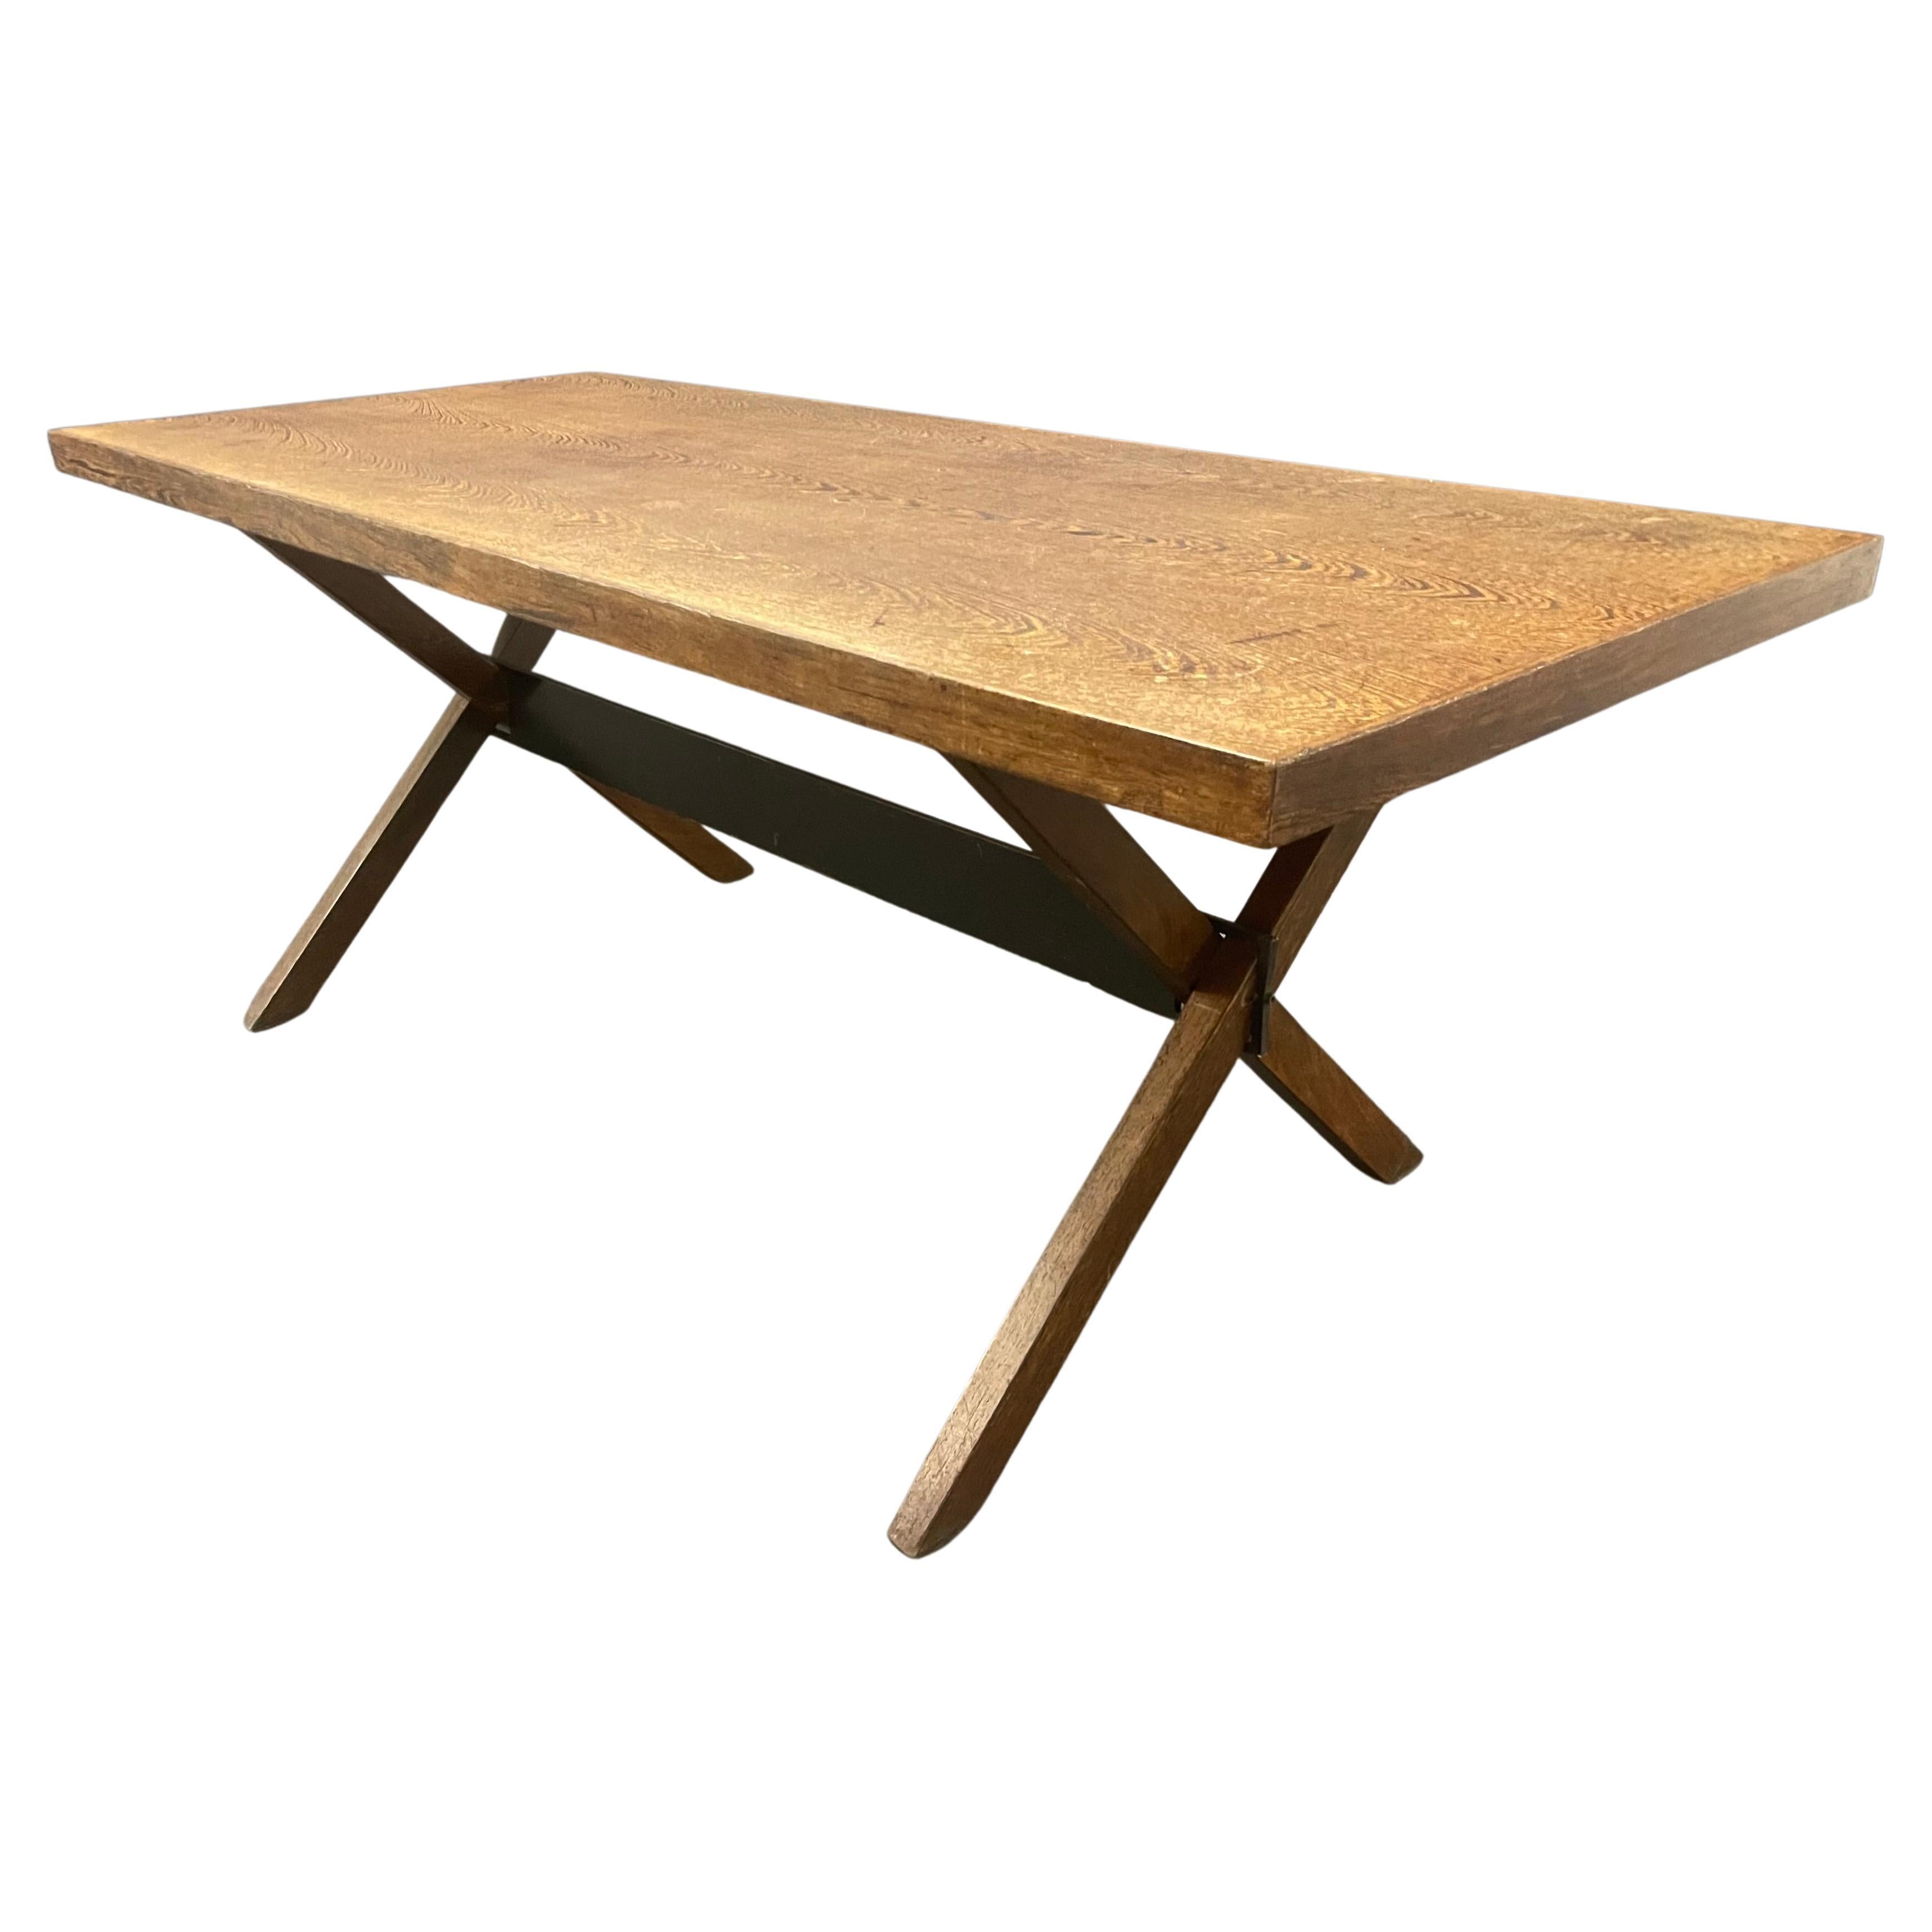 Wunderschöner minimalistischer Tisch oder Schreibtisch aus Wengéholz